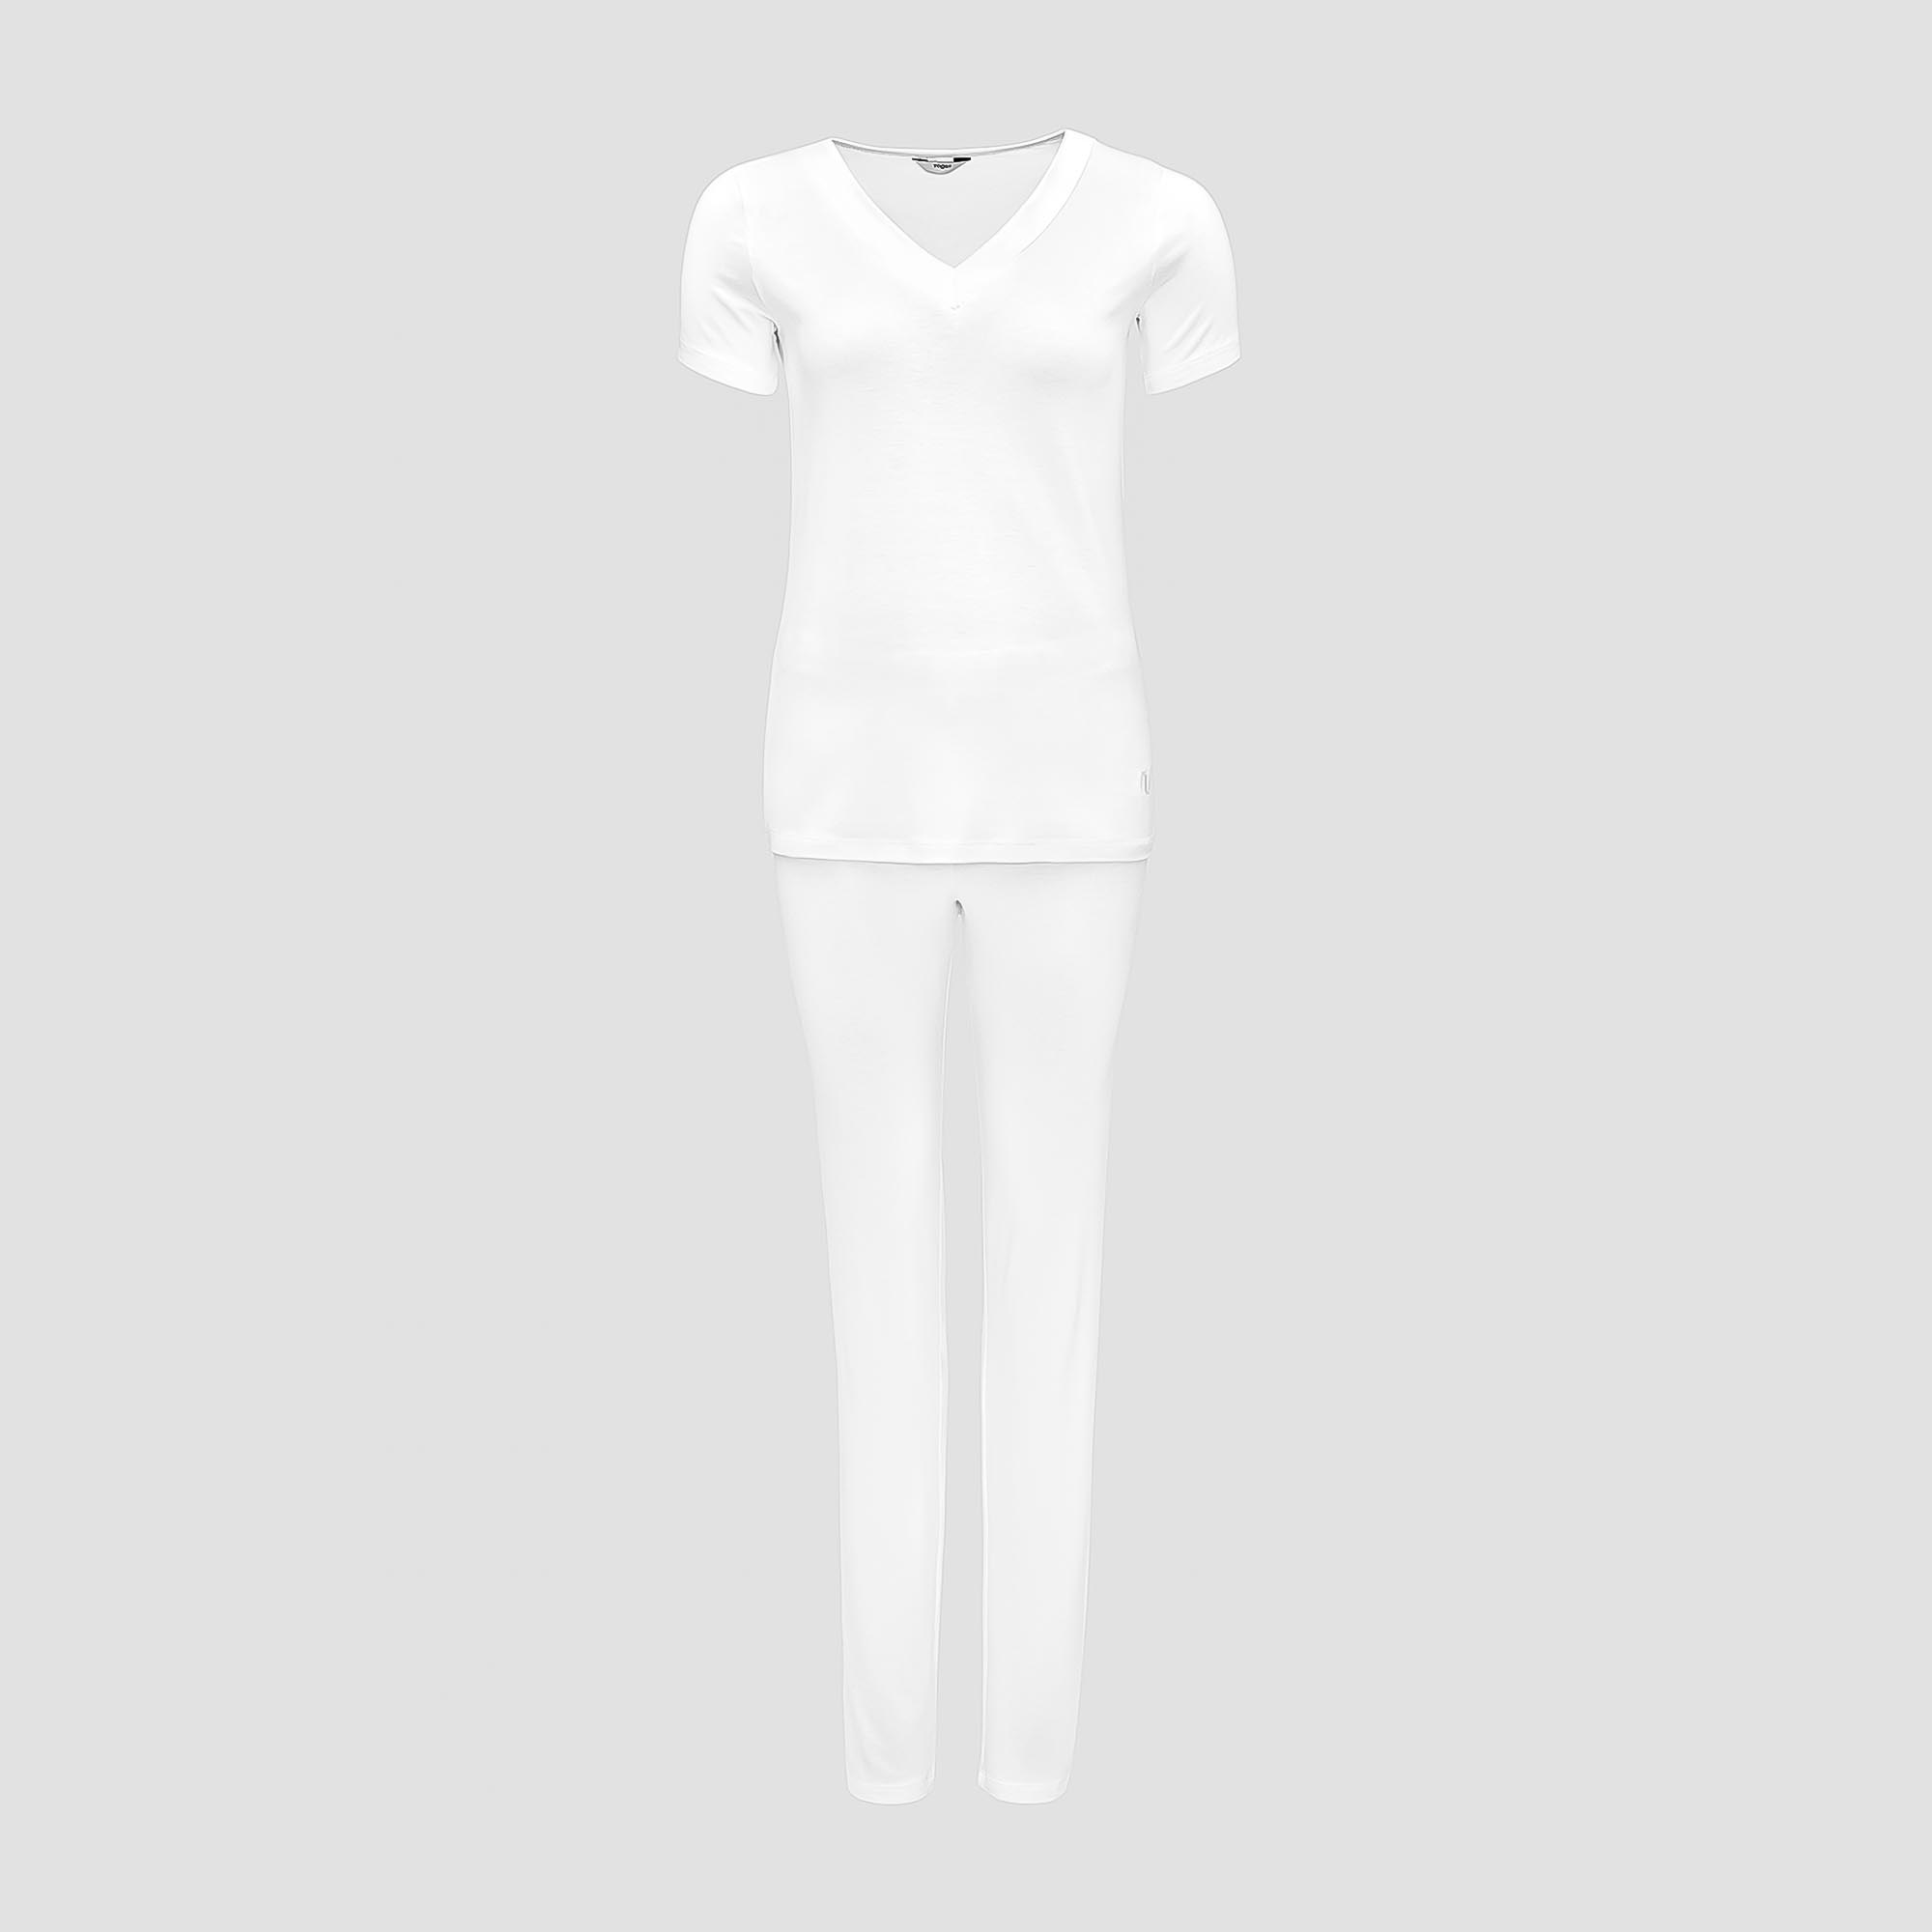 Пижама Togas Ингелла белая женская L(48) 2 предмета пижама сорочка брюки